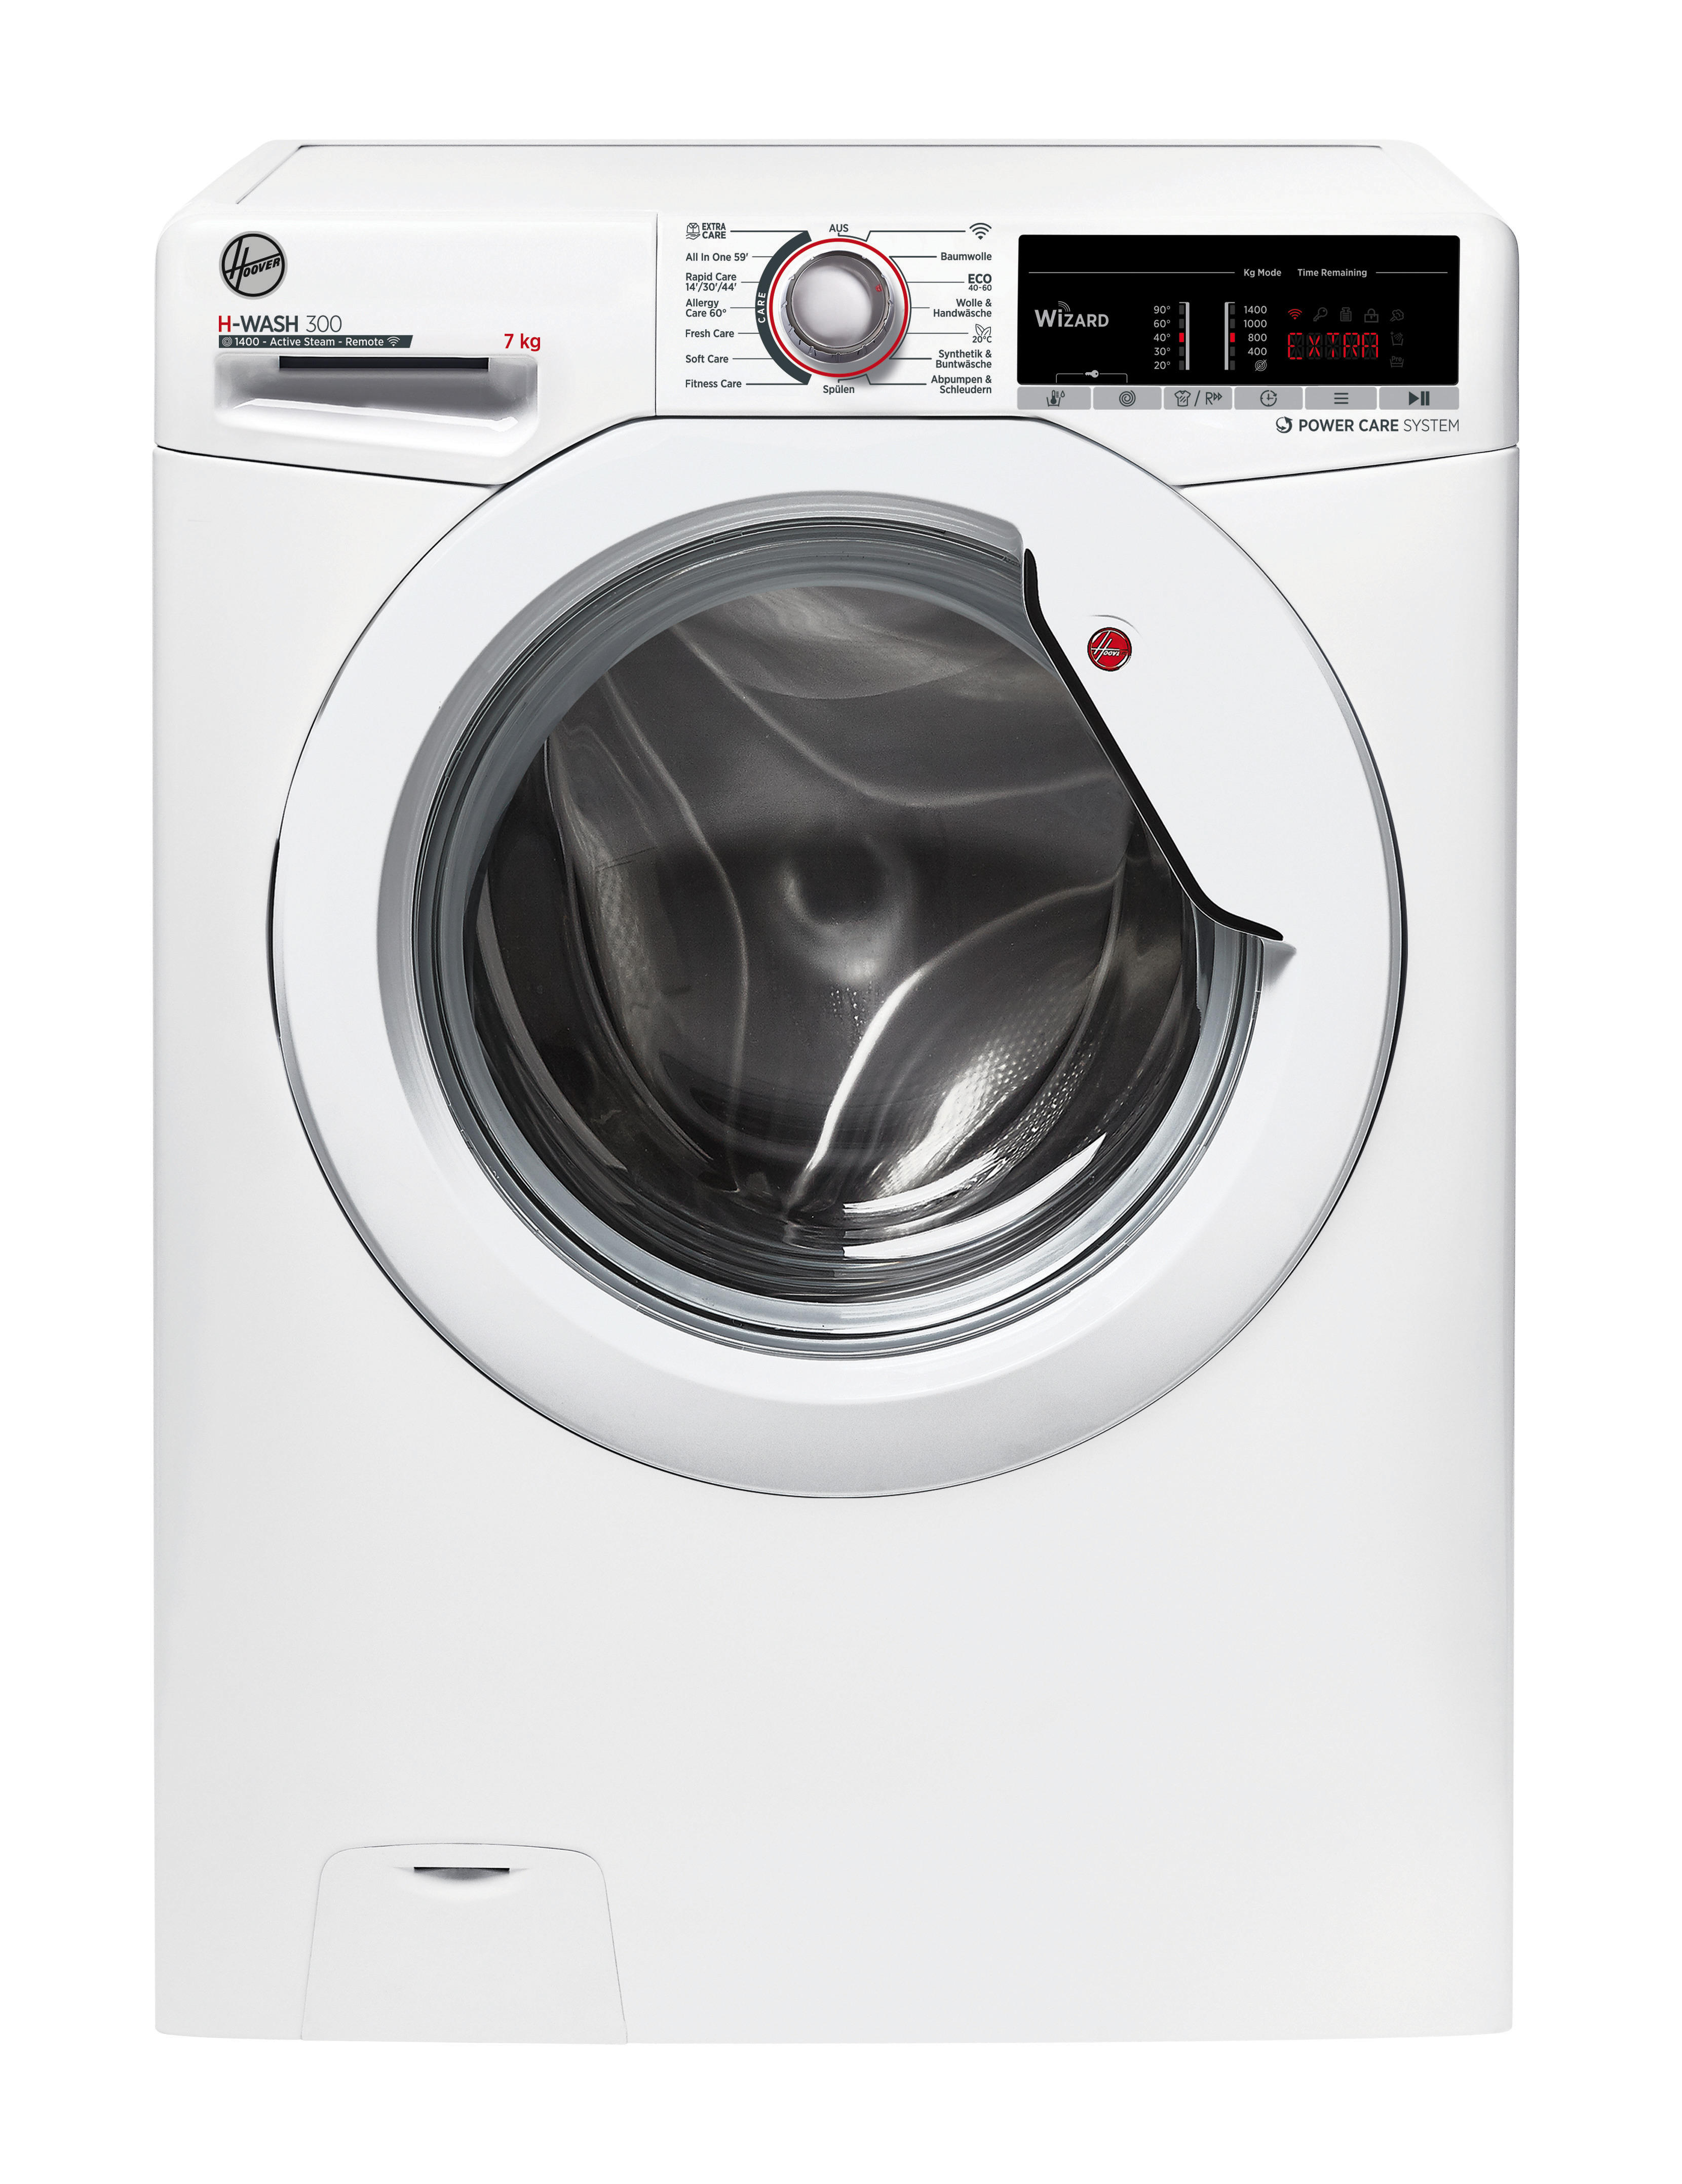 Die Top Auswahlmöglichkeiten - Entdecken Sie bei uns die Waschmaschine und trockner angebot Ihren Wünschen entsprechend